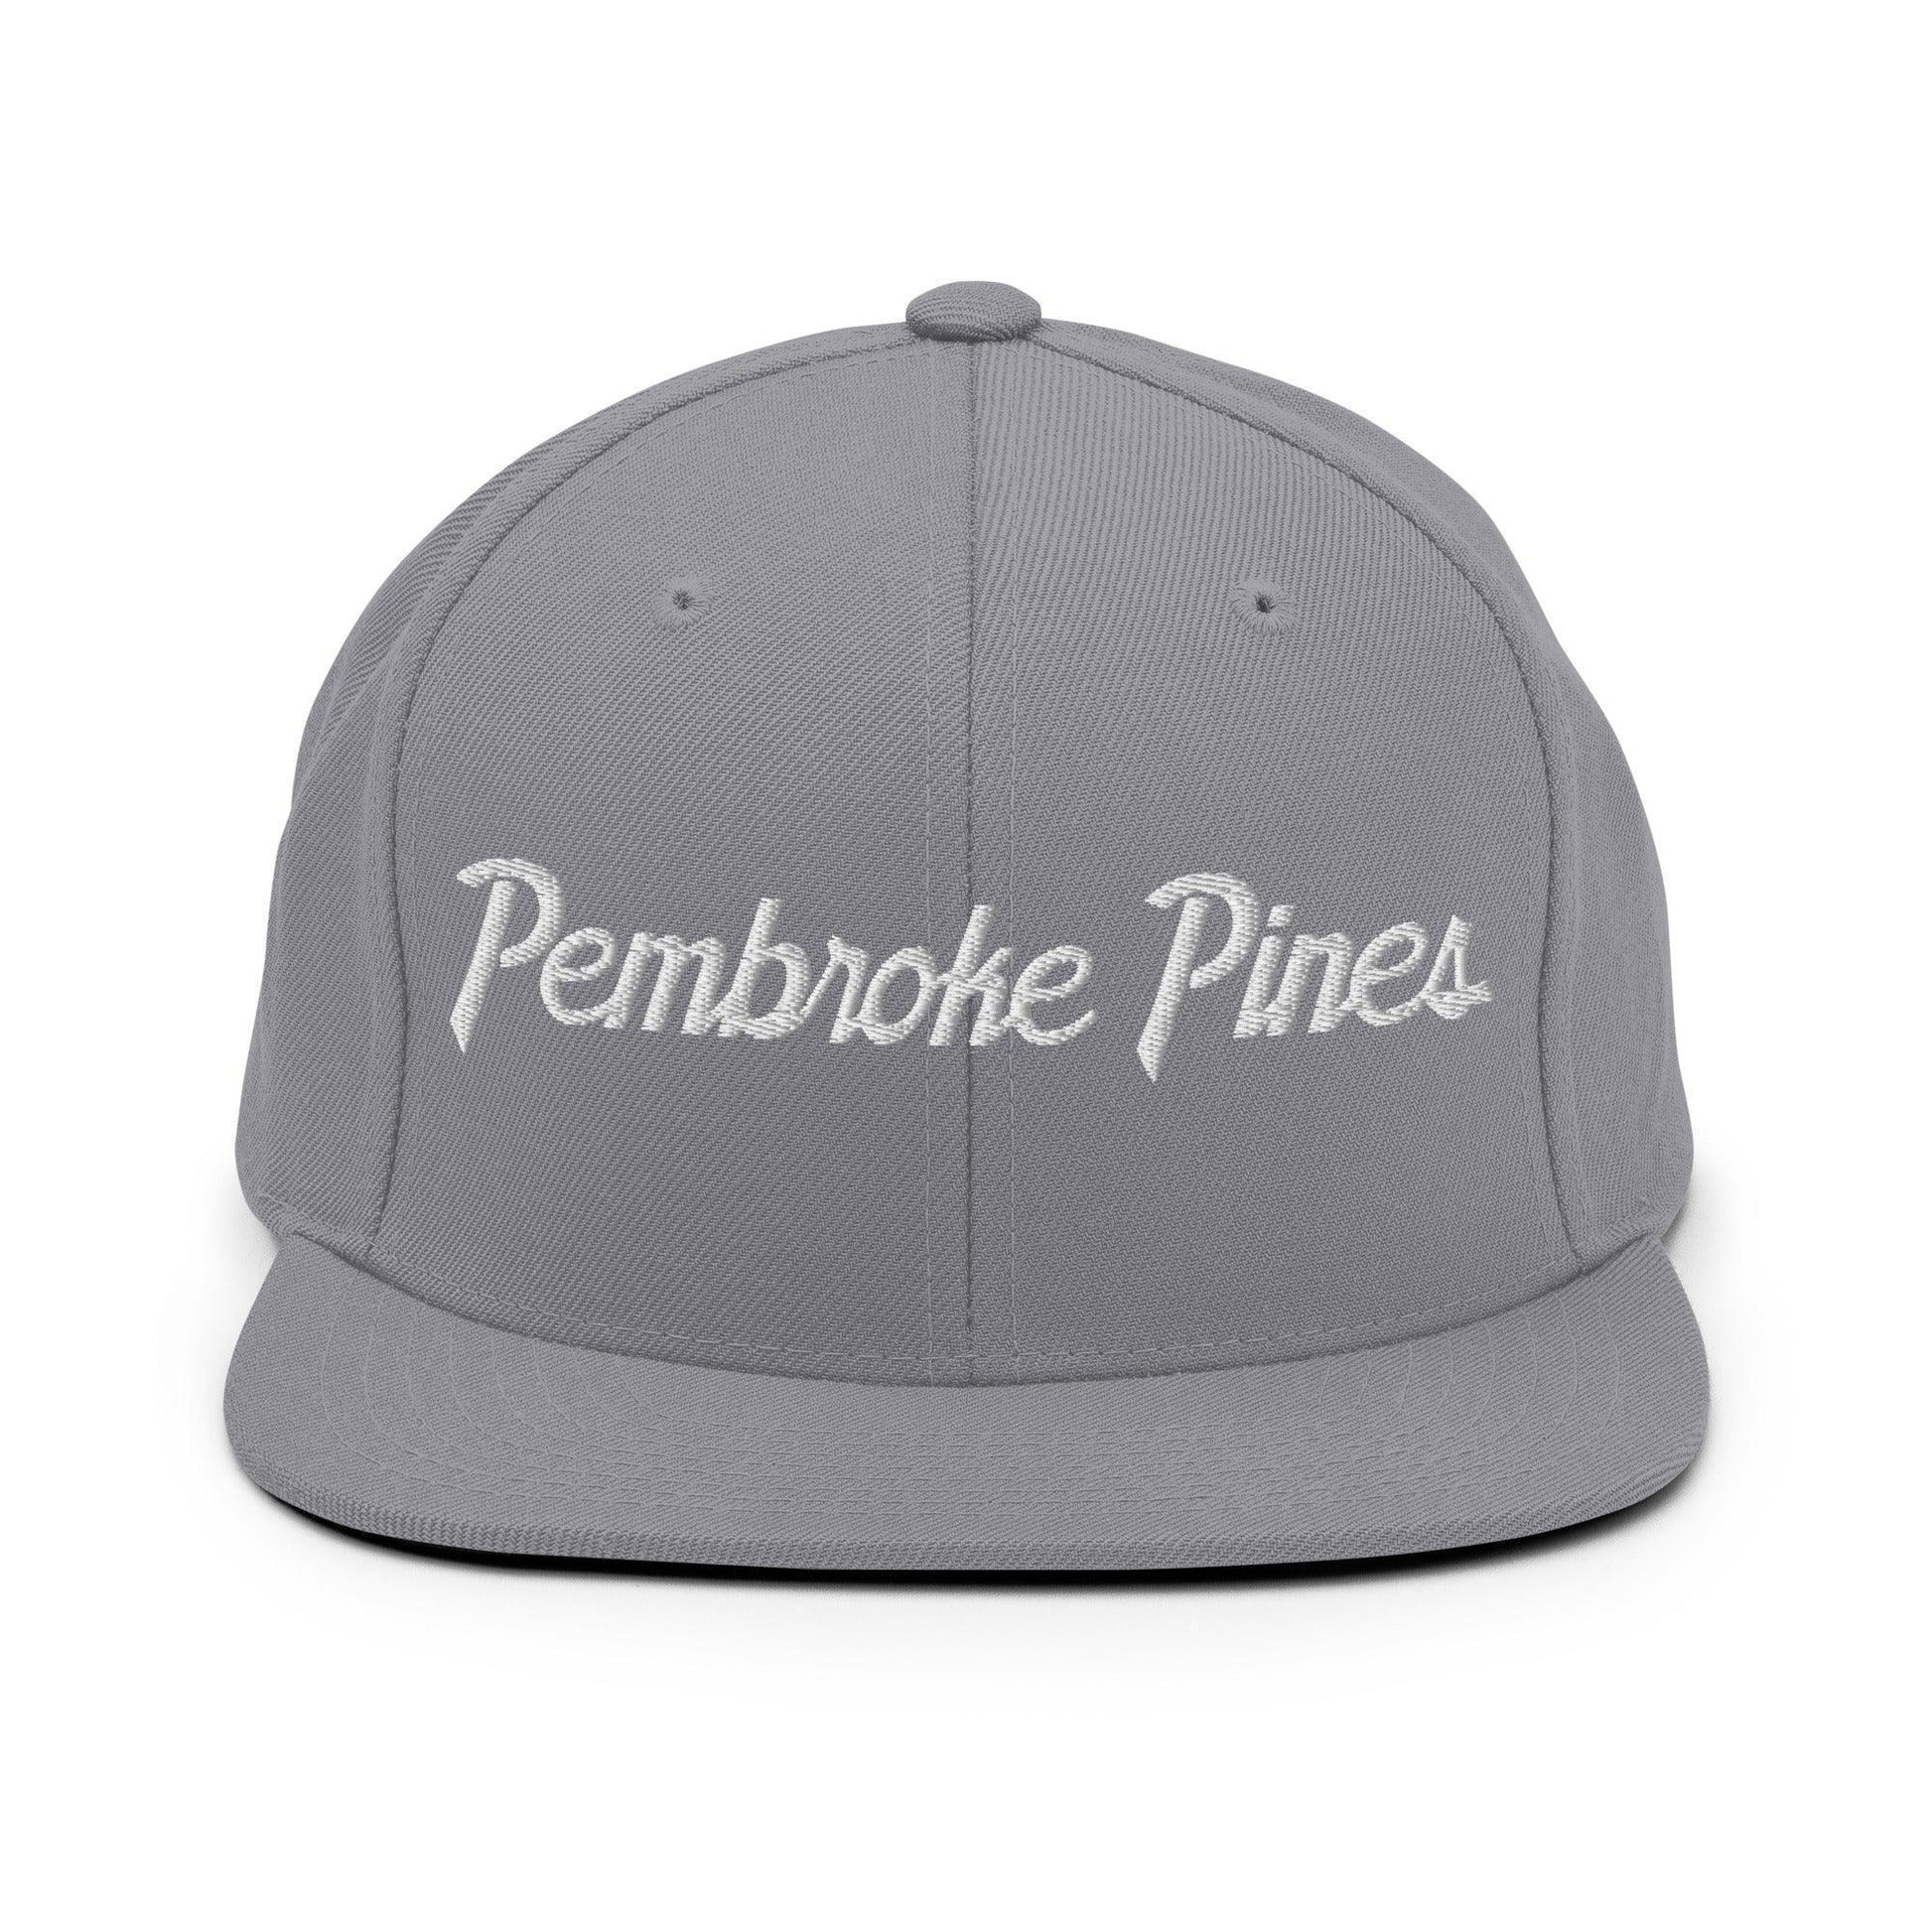 Pembroke Pines Script Snapback Hat Silver